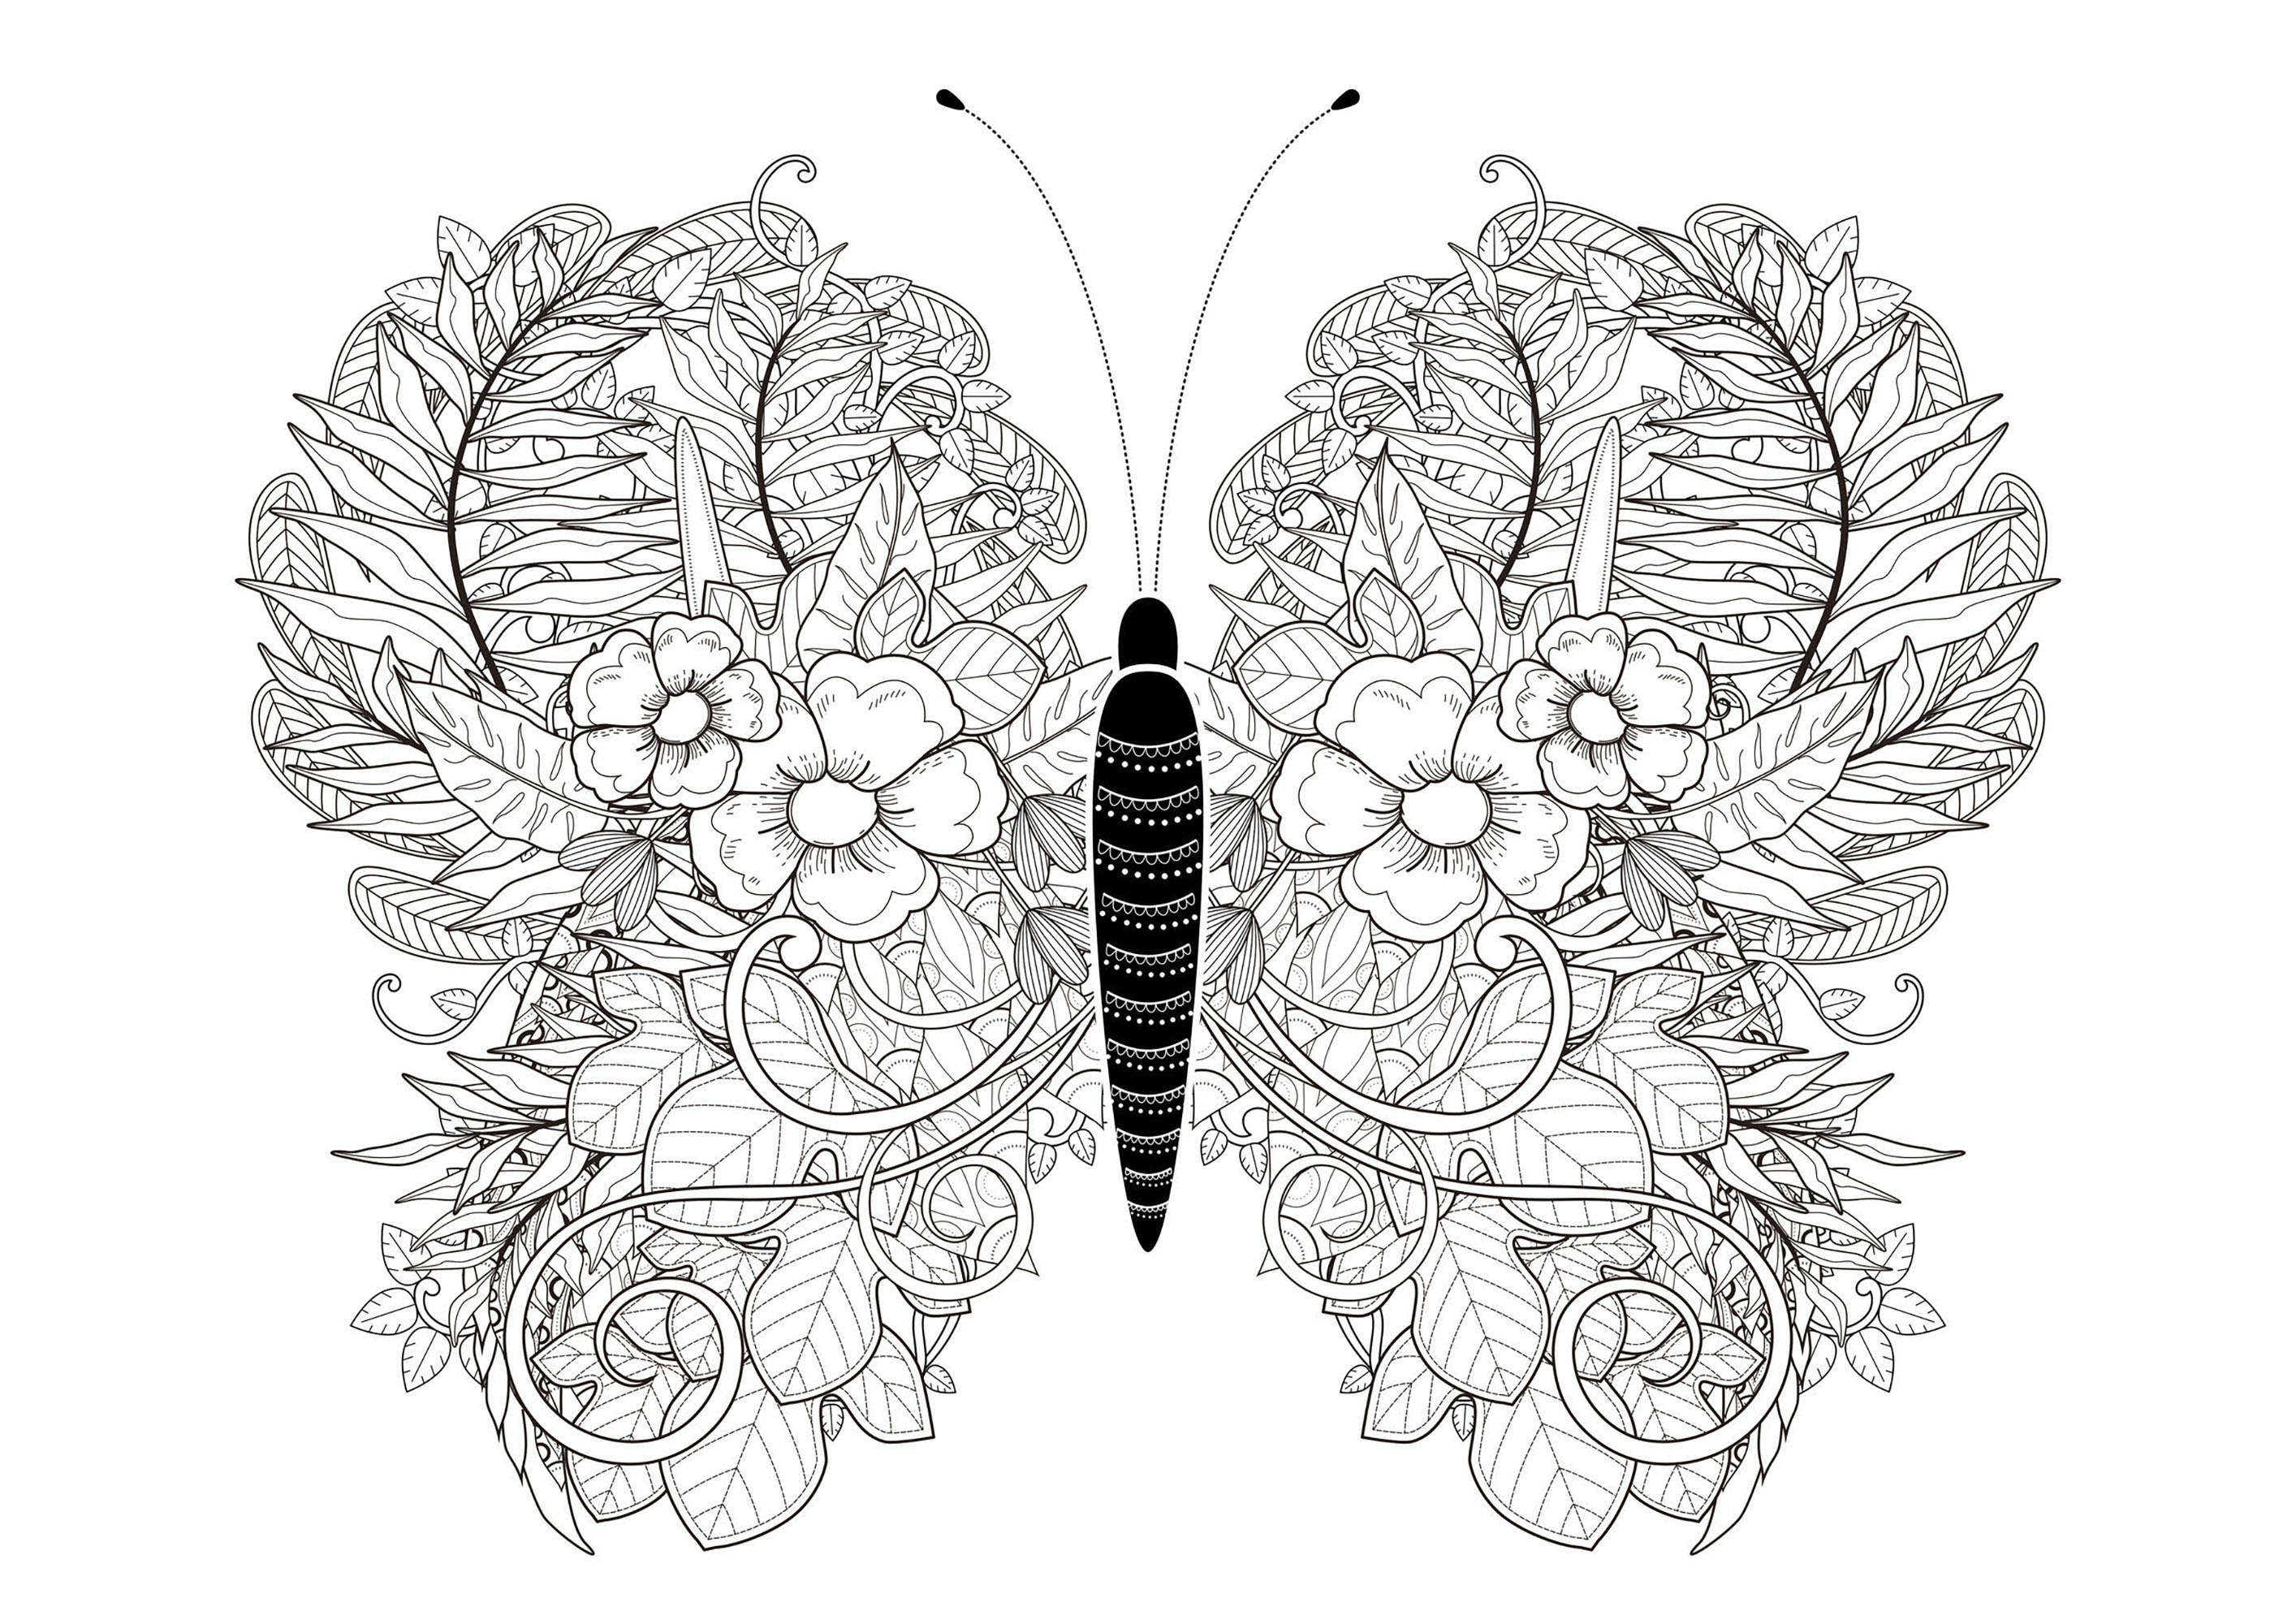 Las hojas de esta mariposa están dibujadas con flores y hojas, Origen : 123rf   Artista : Kchung